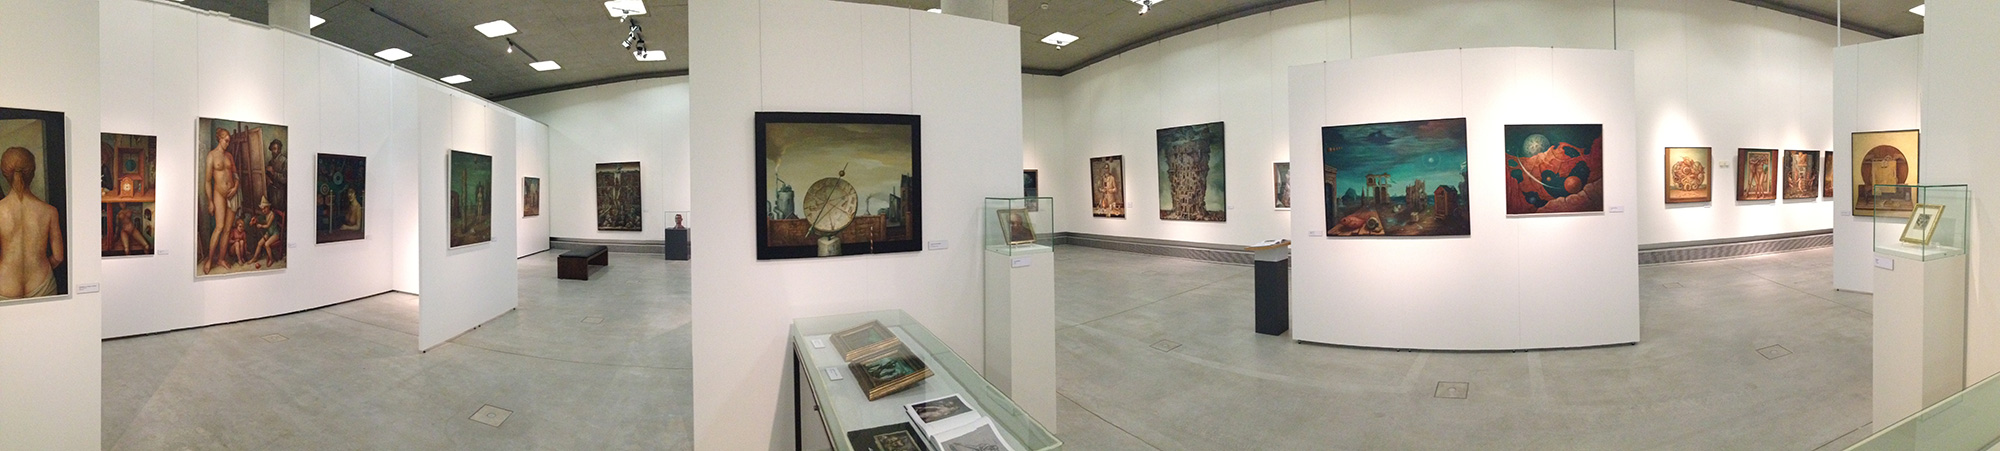 Salles d'exposition Mila-wall au grand angle du Musée d'archéologie de Herne